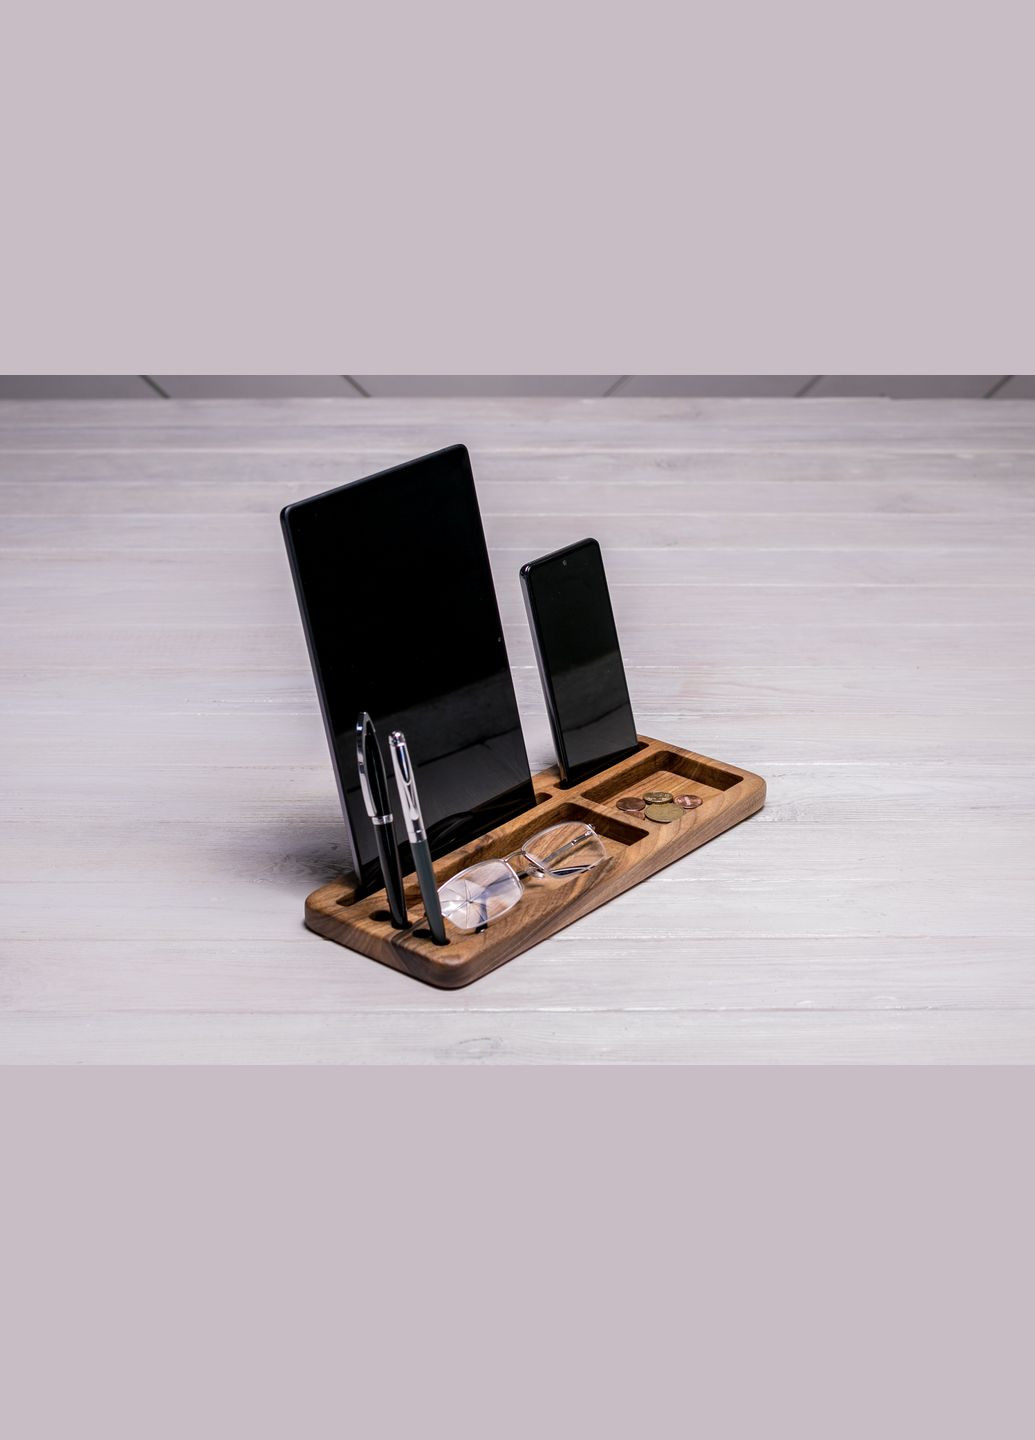 Аксессуар «Подставка для планшета и смартфона» Подарок для жены EcoWalnut (293083546)